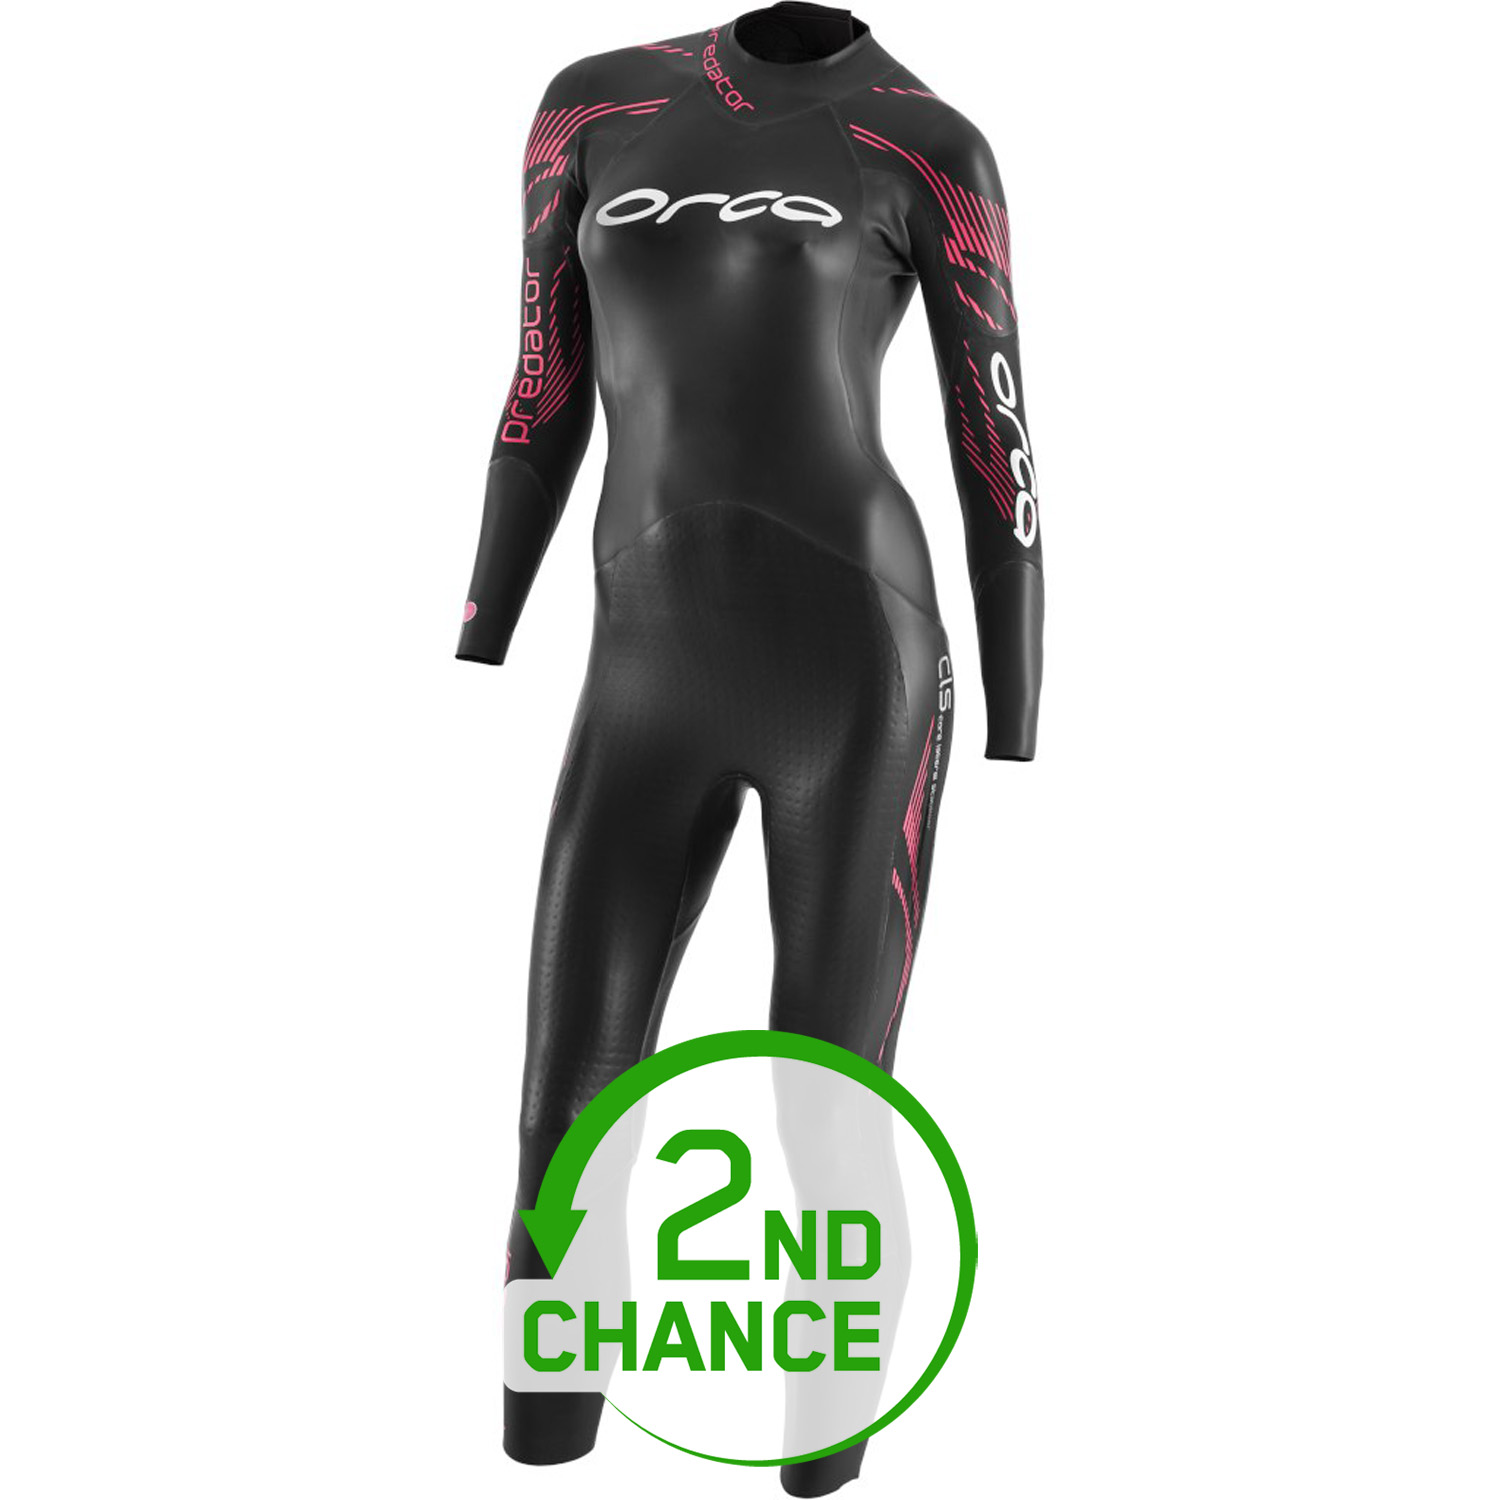 Produktbild von Orca Predator Fullsleeve Damen Triathlon Wetsuit - schwarz - B-Ware